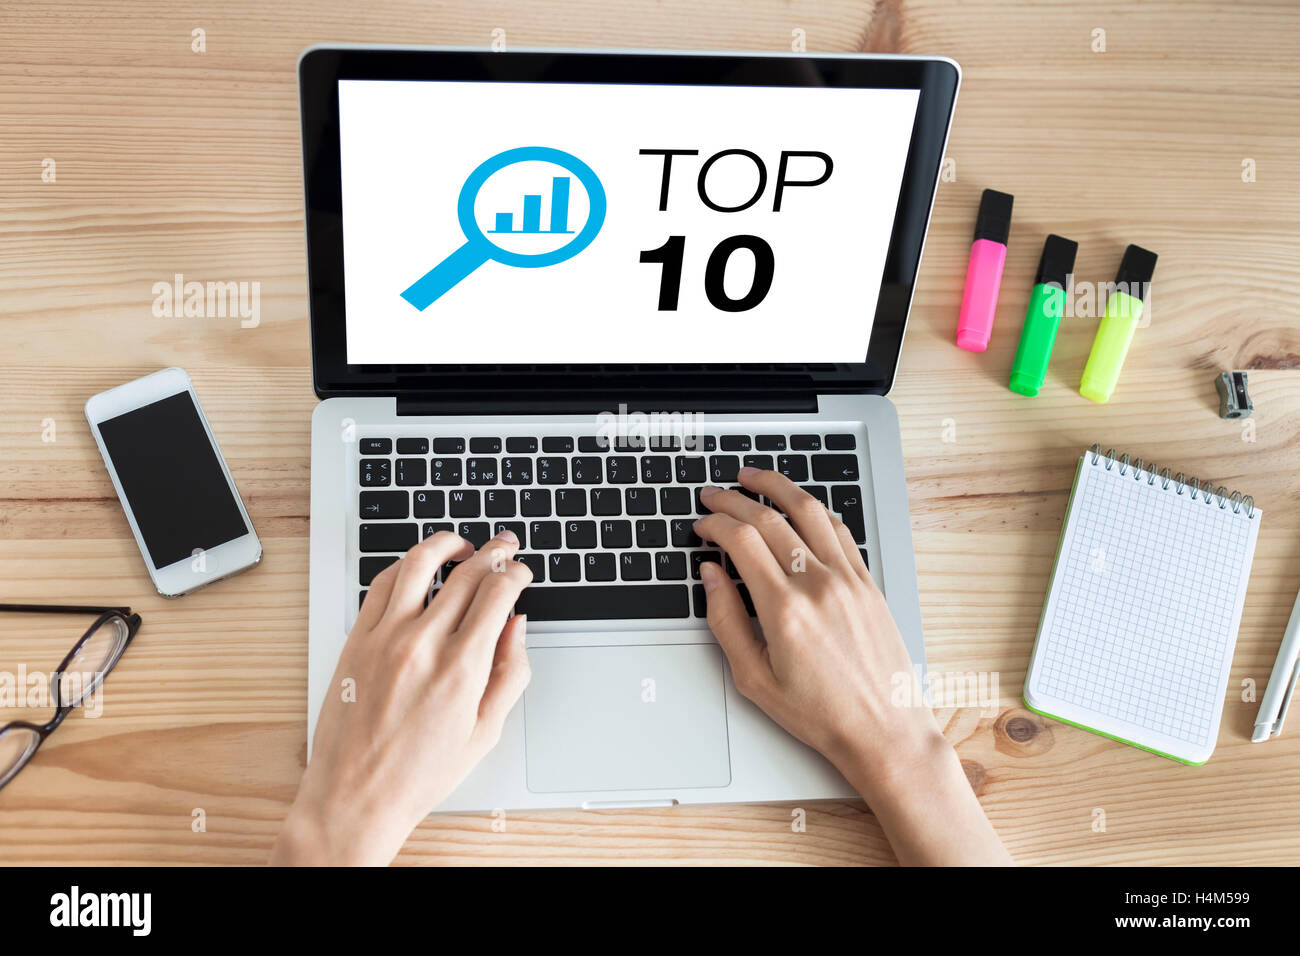 Lista Top 10 sito web sullo schermo di un computer portatile con le mani la digitazione sulla tastiera Foto Stock